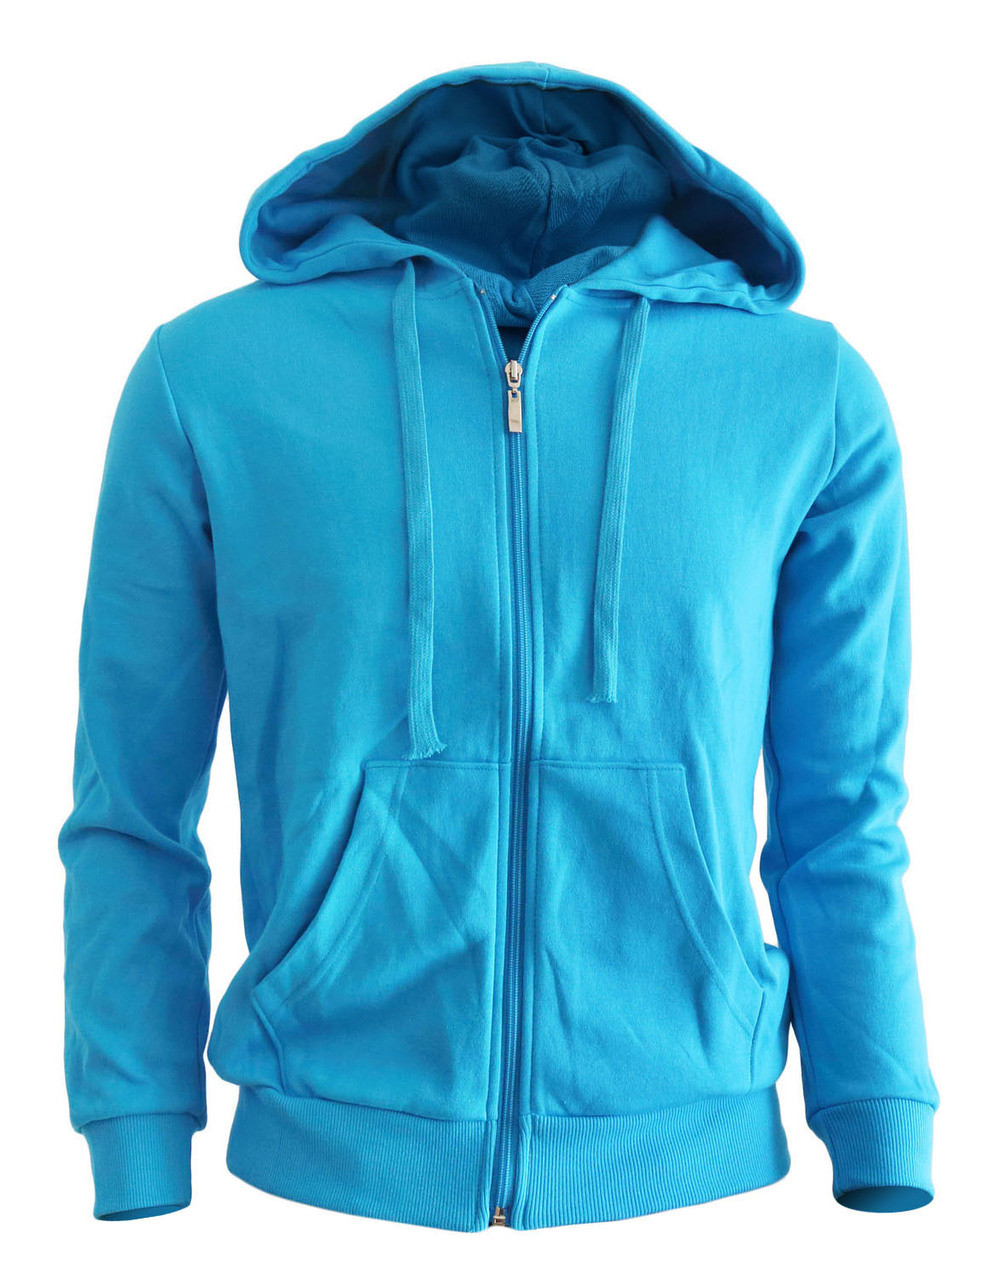 Casual warm sweat zip-Hoodie jumper of blue color hoodie zip-up